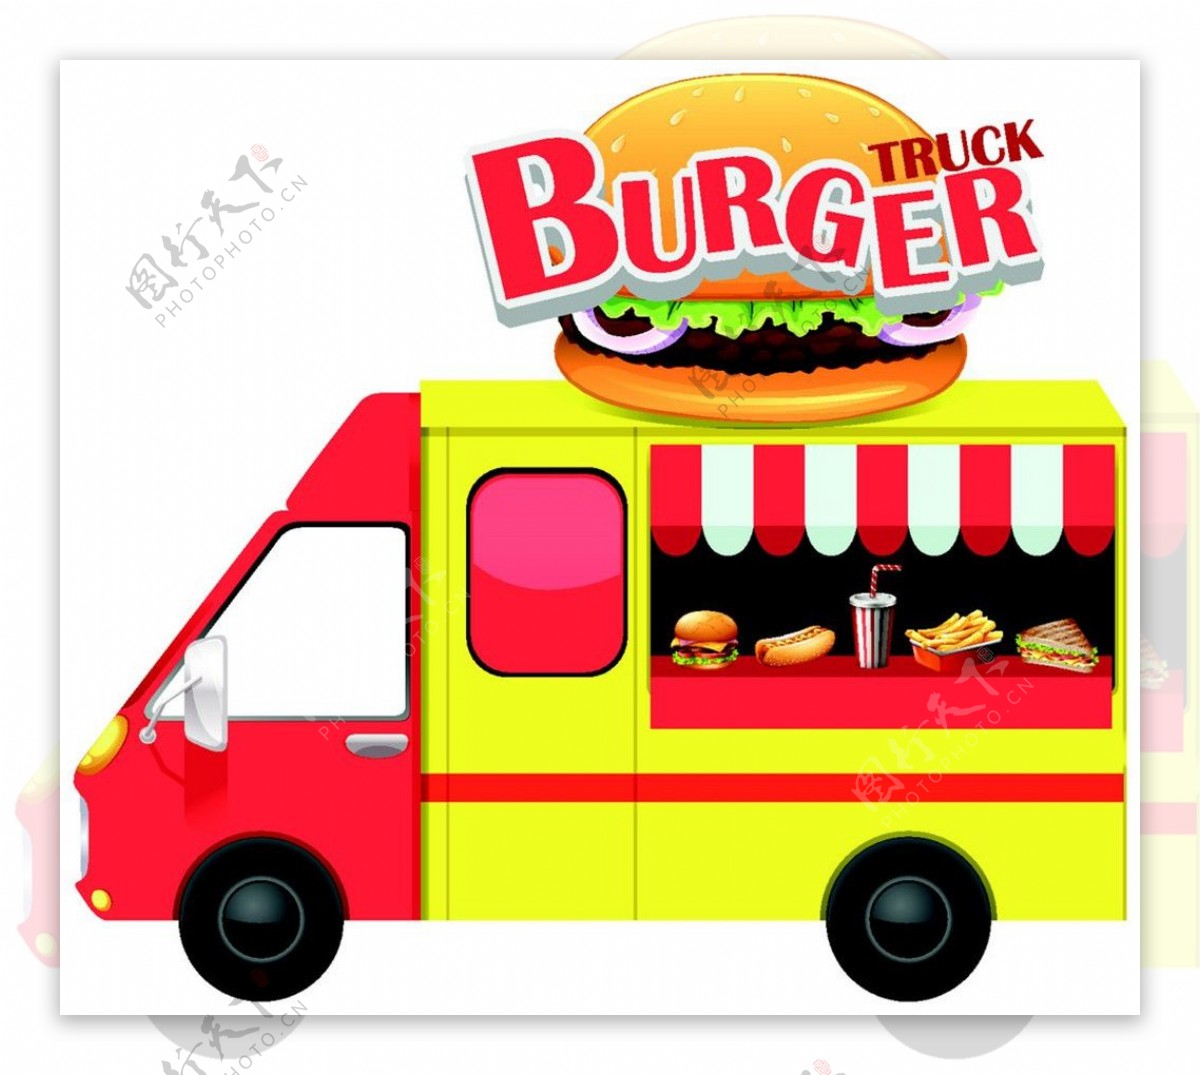 汉堡美食餐车设计图片